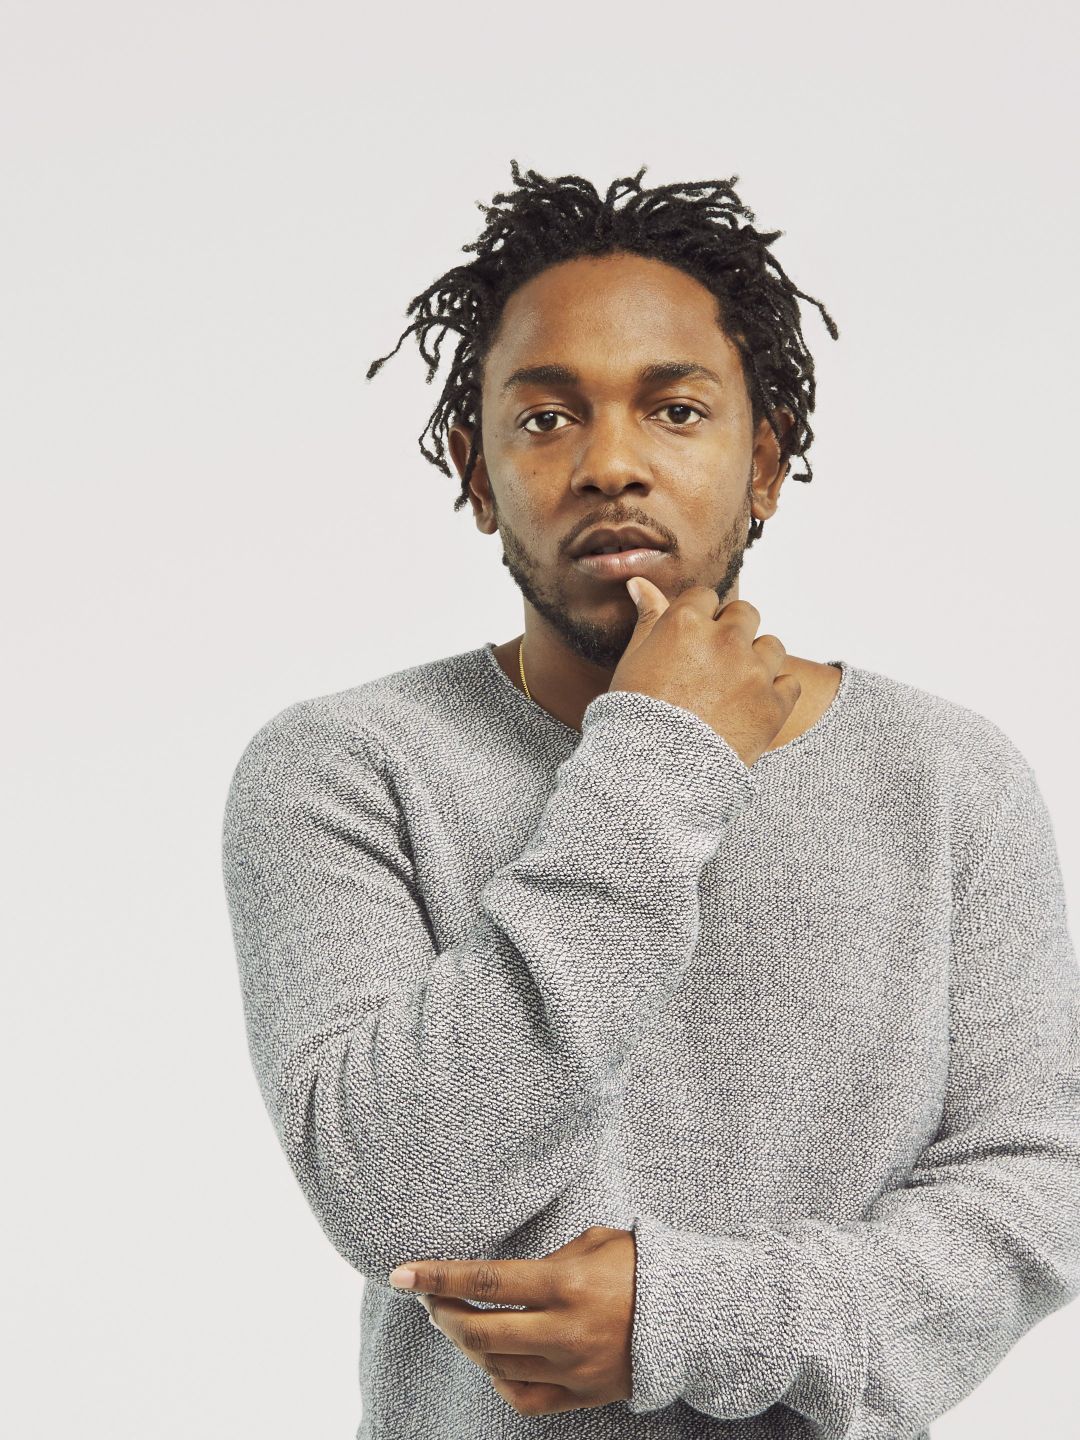 Kendrick Lamar dating history